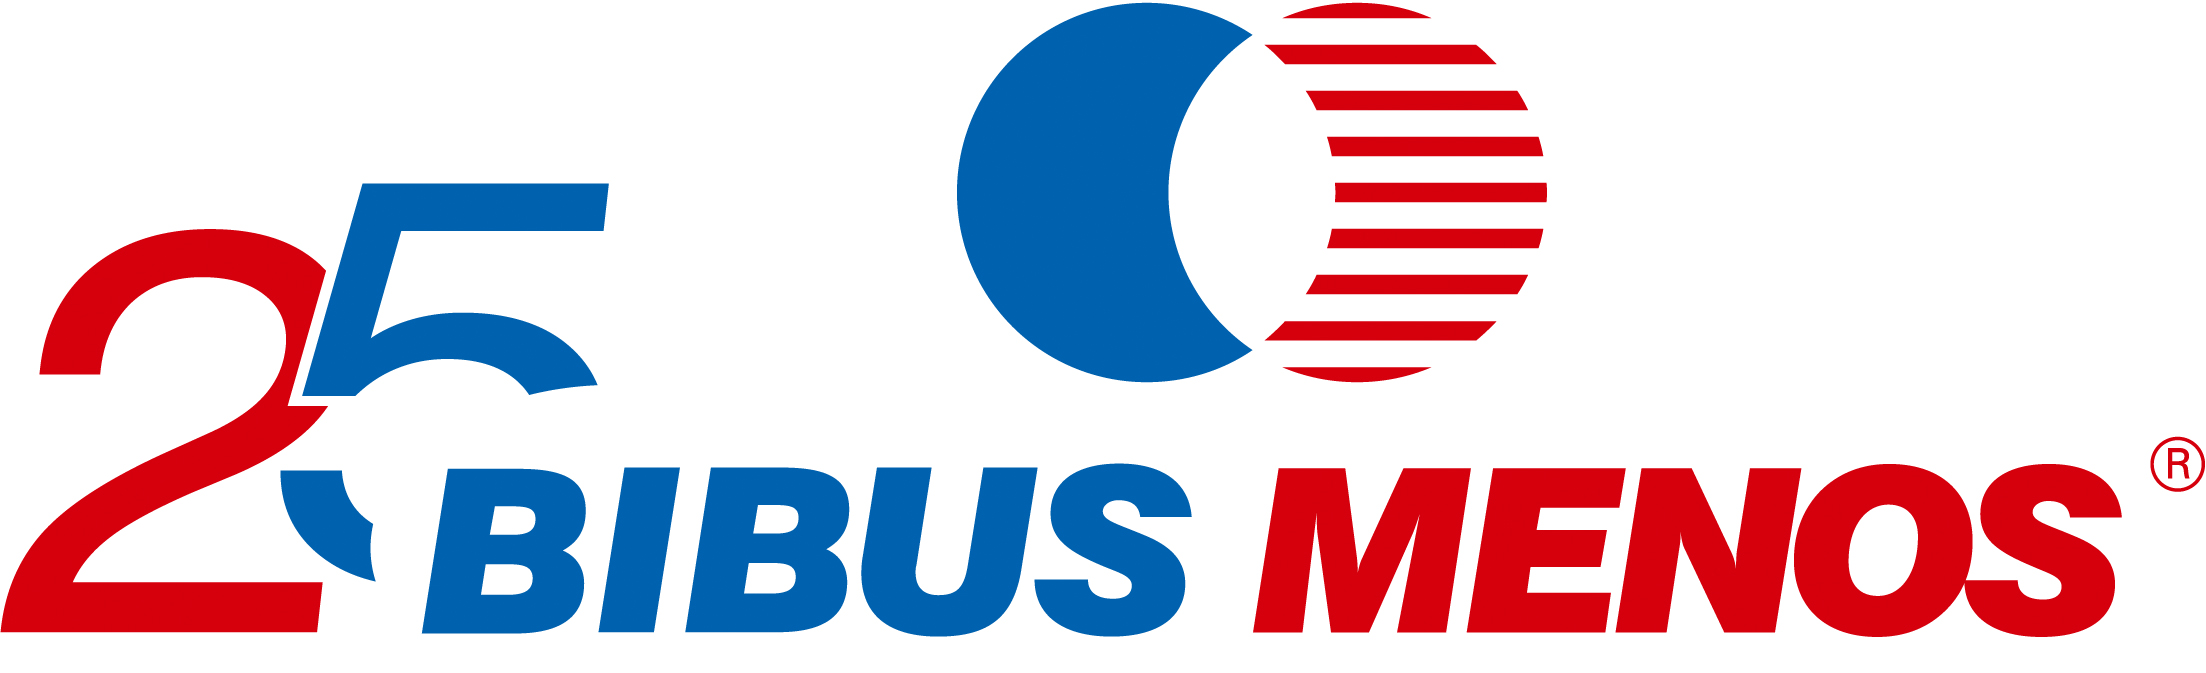 BIBUSMENOS logo